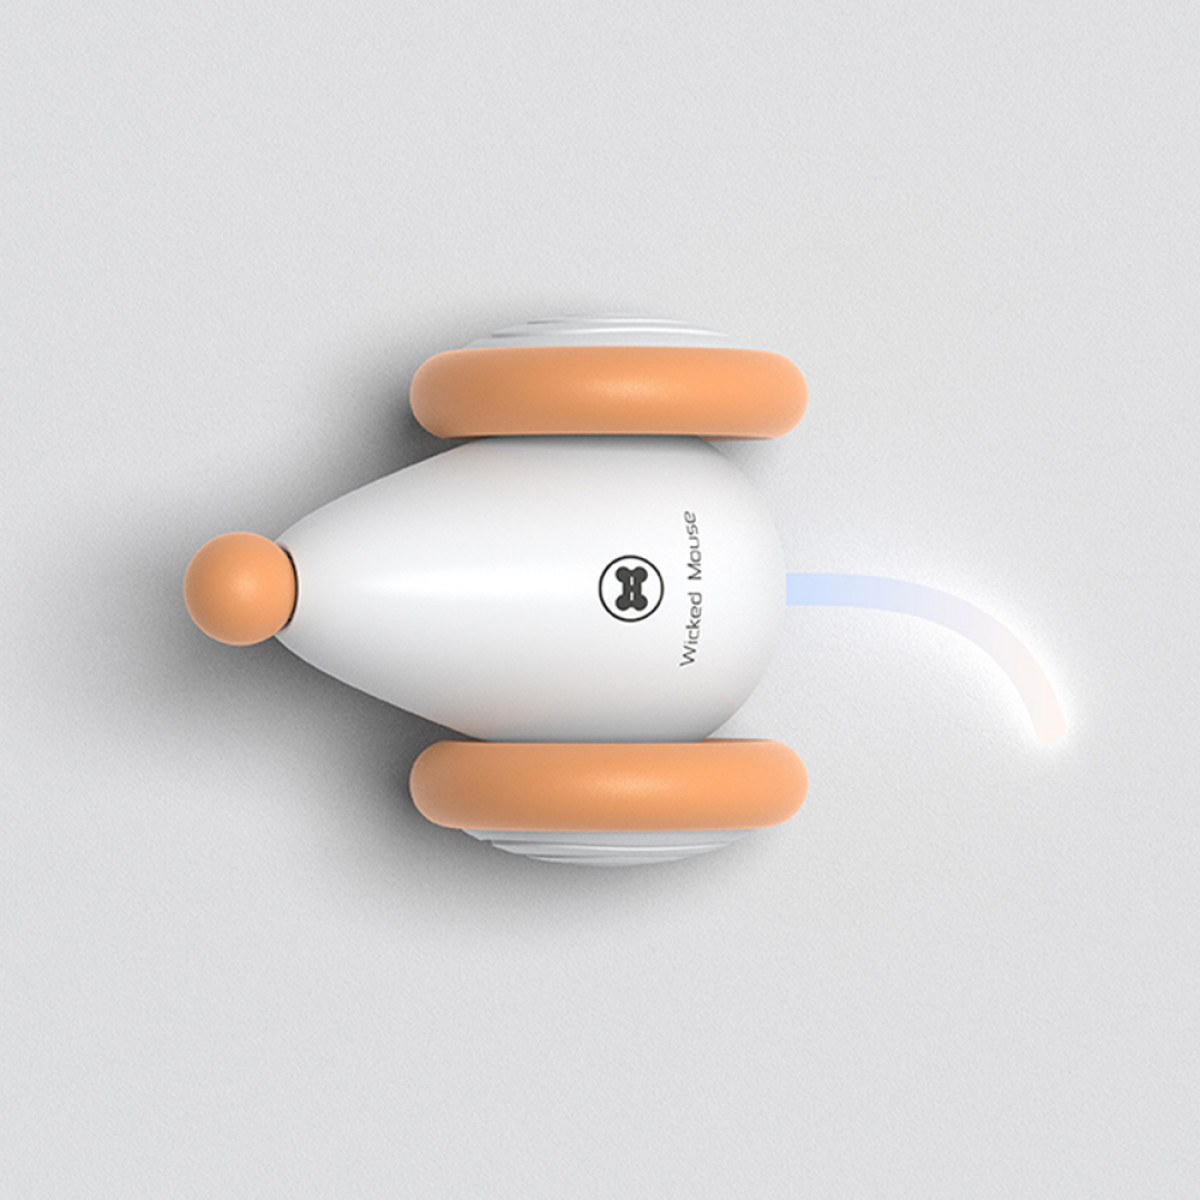 Orange/Weiß INF Haustier-Spielzeug Katze USB-Aufladung Interaktives Maus für Spielzeug